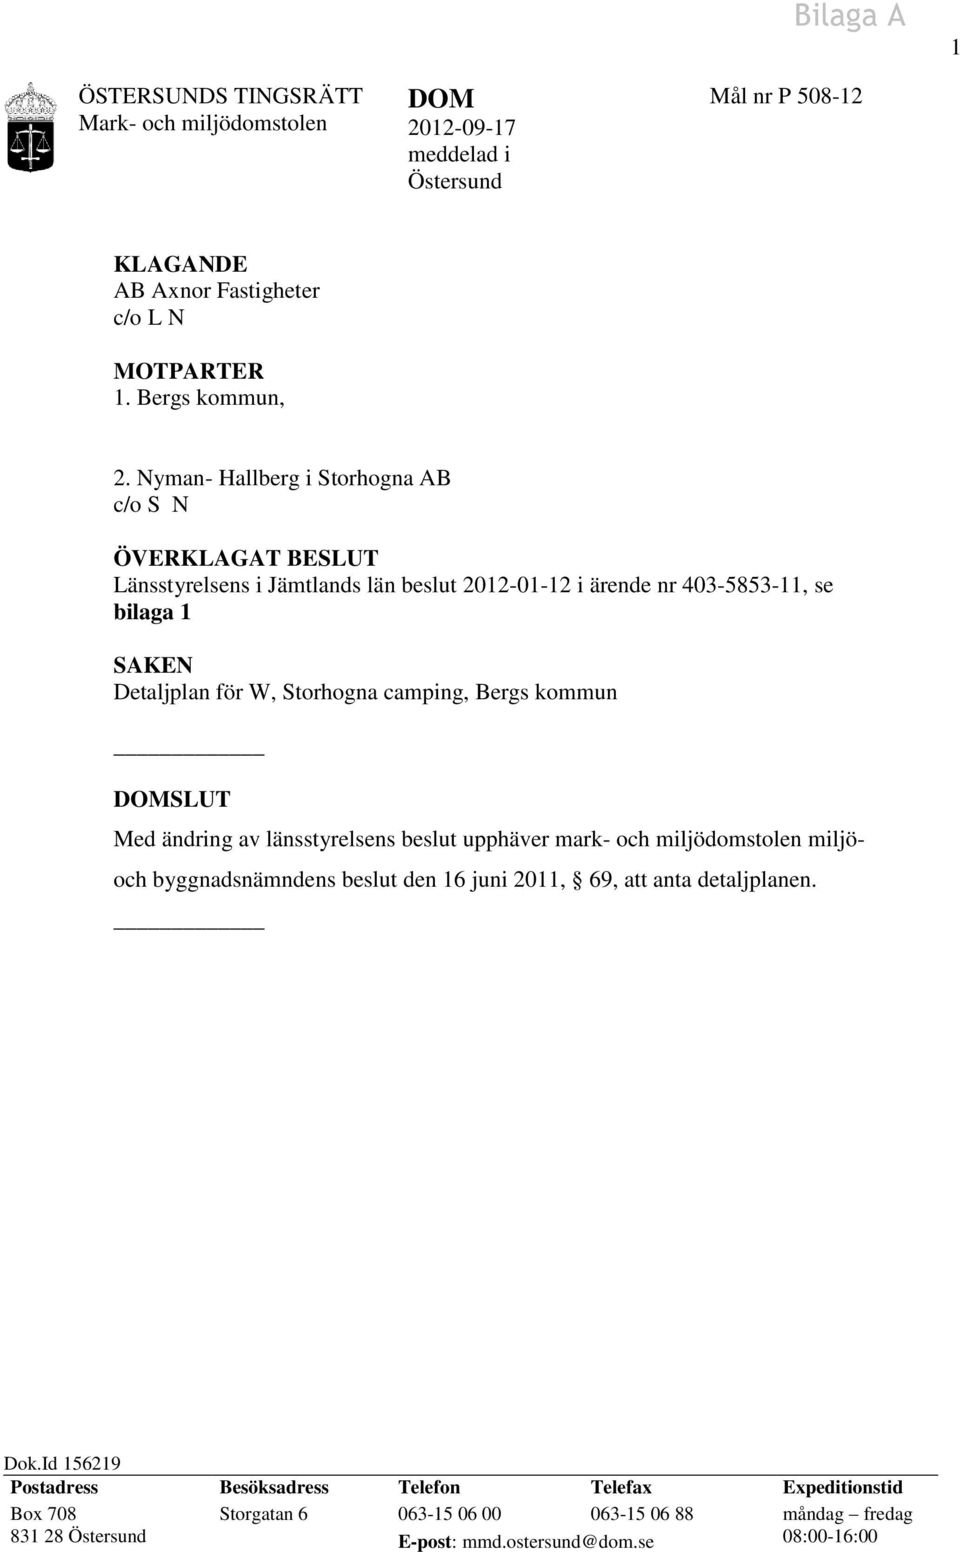 camping, Bergs kommun DOMSLUT Med ändring av länsstyrelsens beslut upphäver mark- och miljödomstolen miljö- och byggnadsnämndens beslut den 16 juni 2011, 69, att anta detaljplanen.